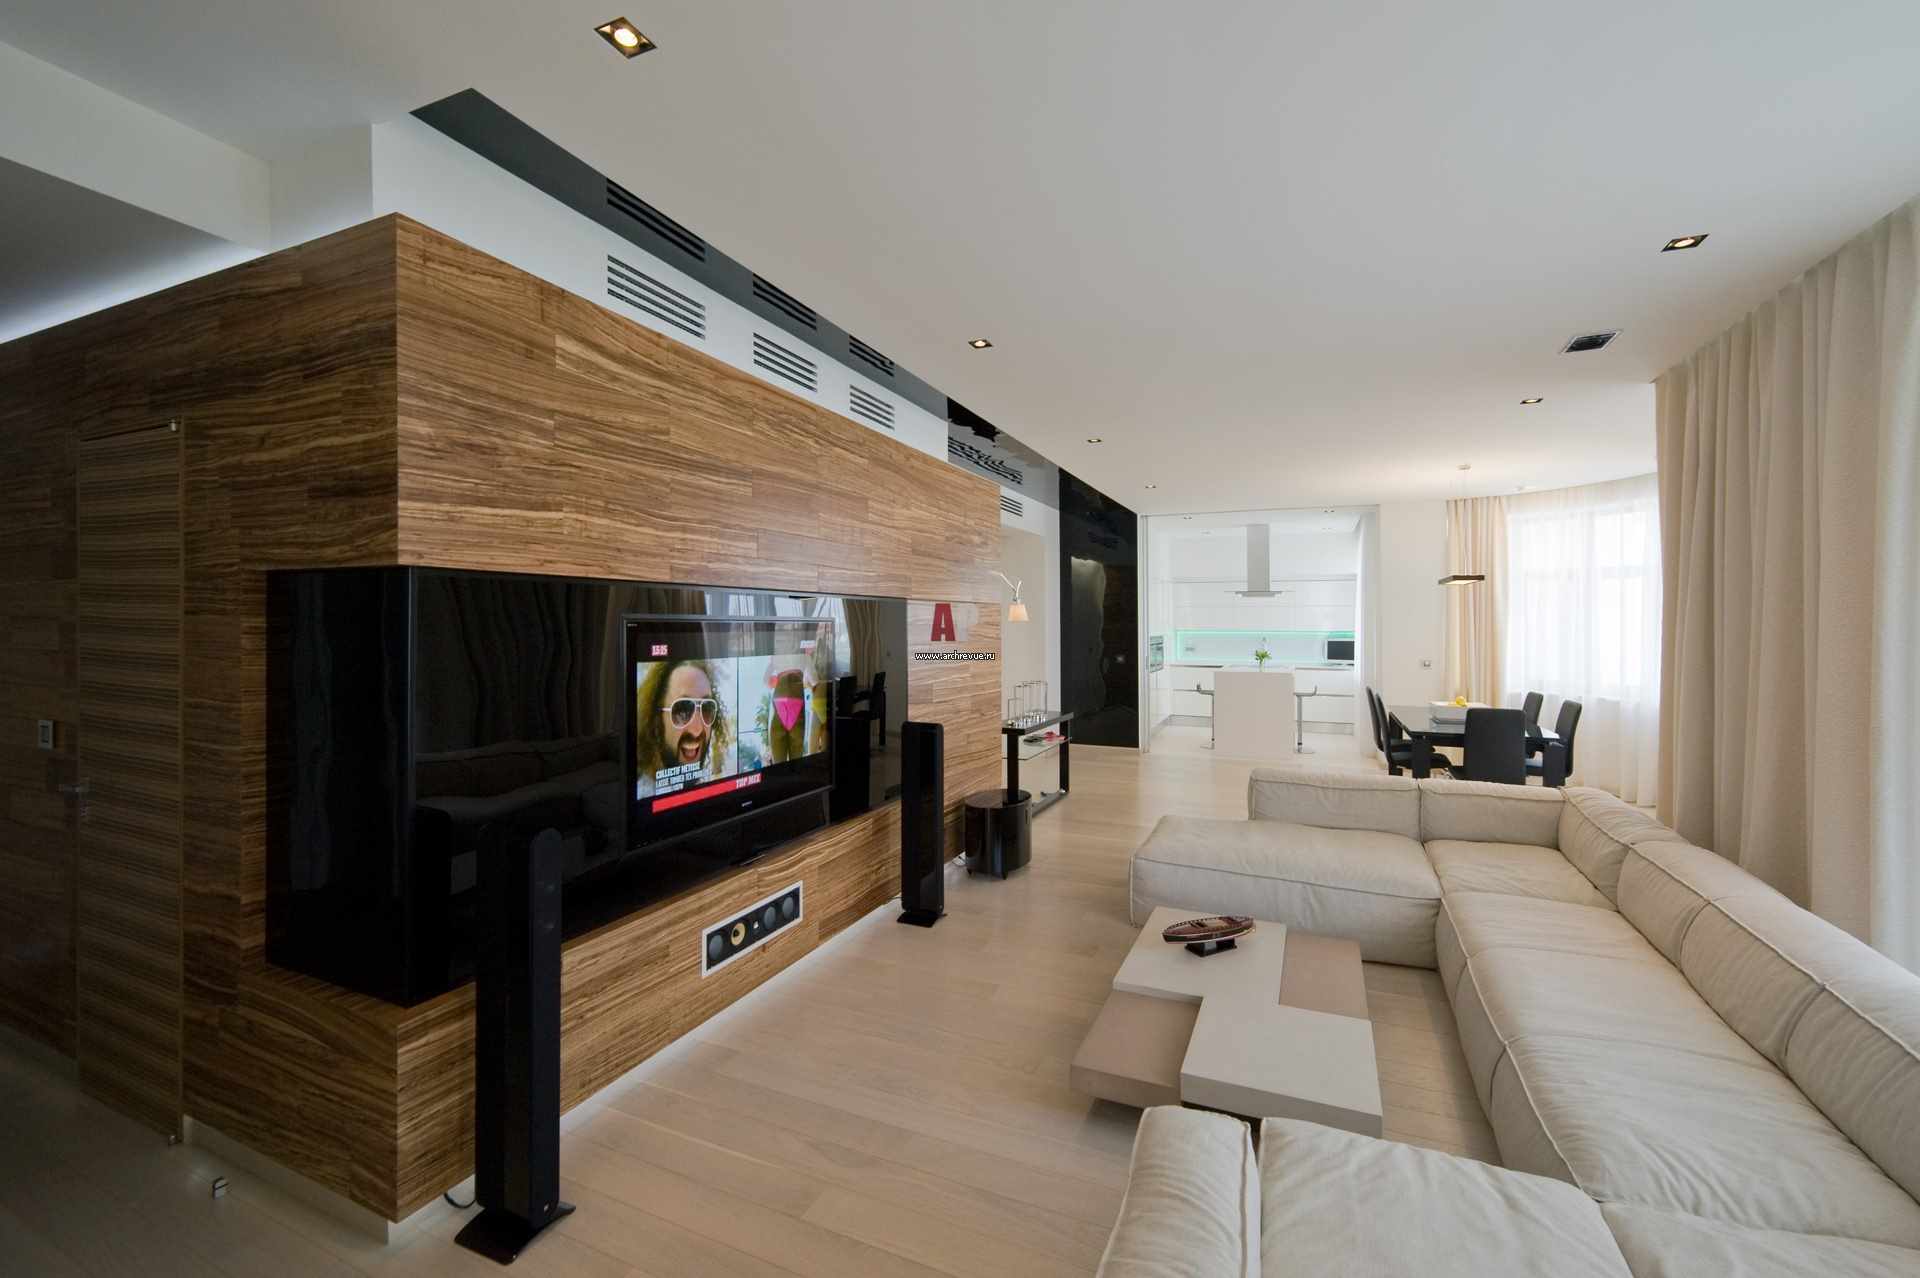 myšlienka použitia krásneho minimalistického interiéru obývacej izby